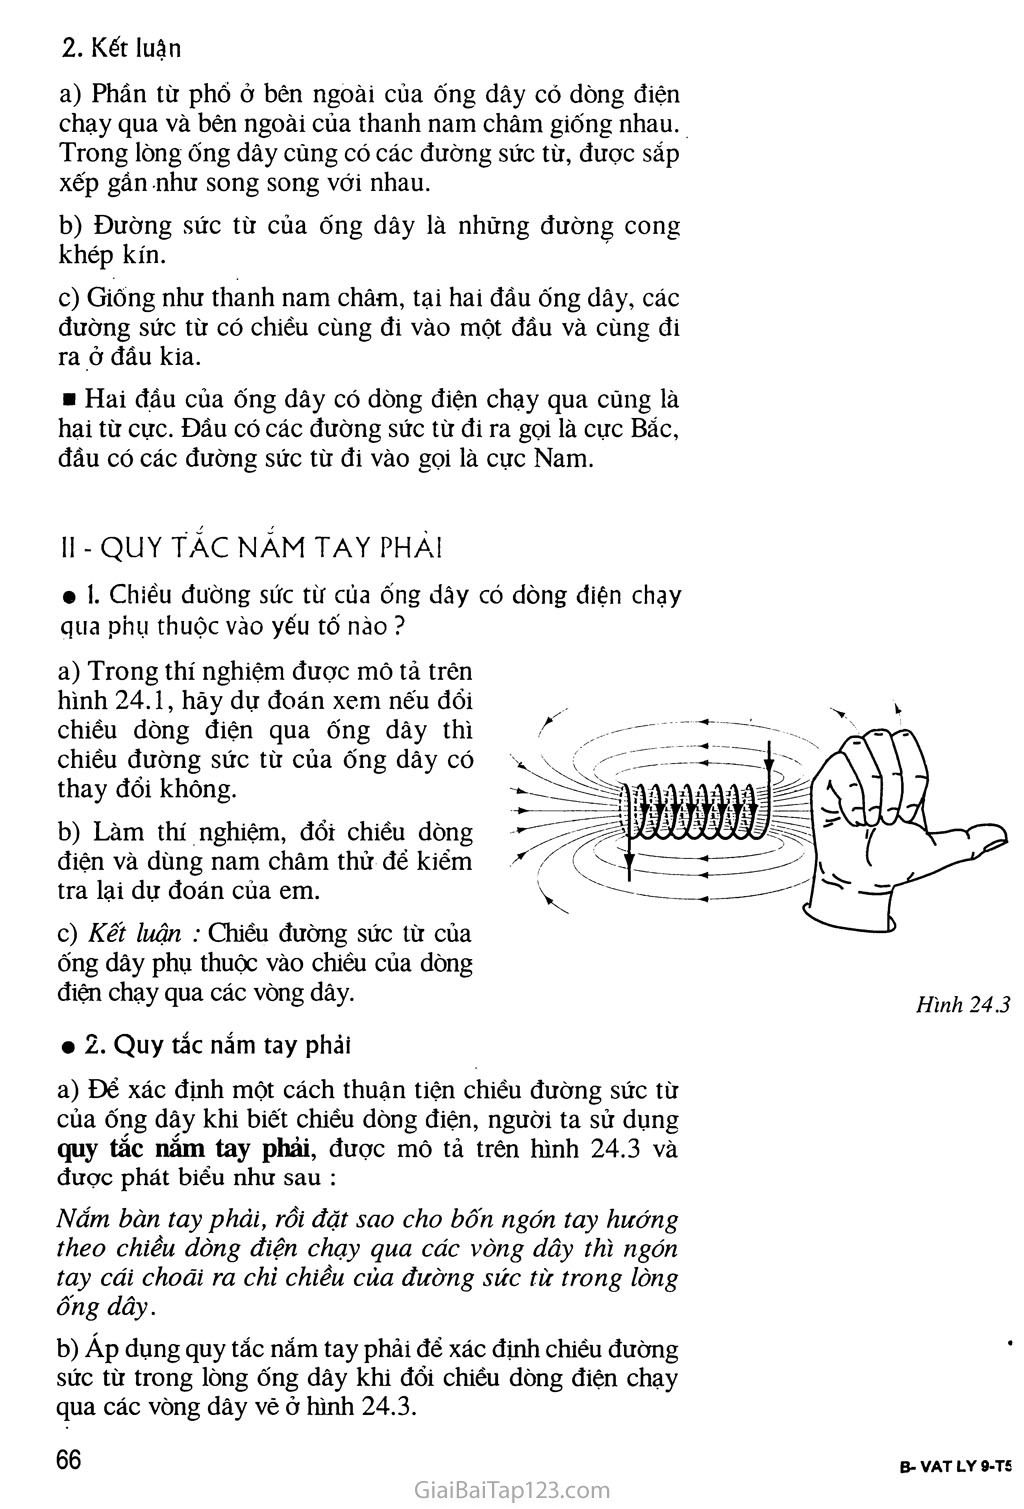 Bàl 24 Từ trường của ống dây có dòng điện chạy qua trang 2